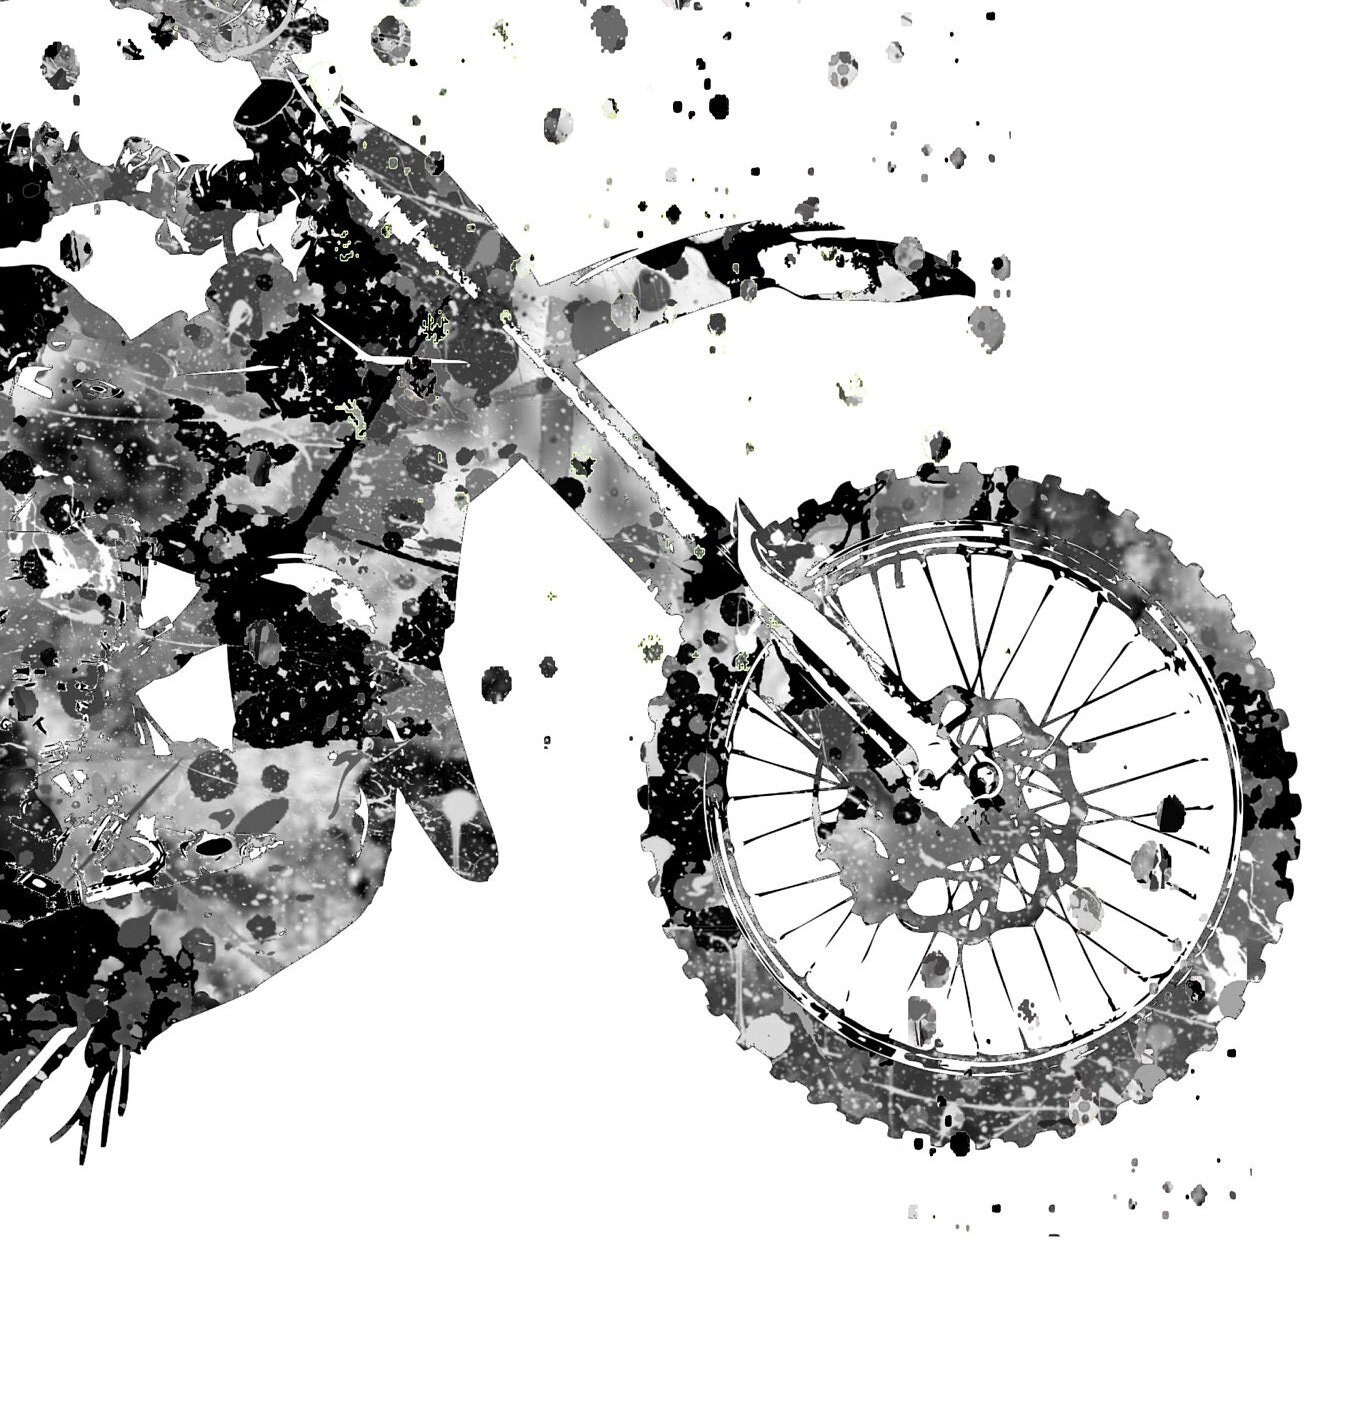 motocross corredor, jinete. mano dibujado ilustración, negro y blanco,  silueta. suciedad bicicleta conceptos, extremo deporte, vehículo,  motocicleta comunidad. Perfecto para camisas, pegatinas, imprimir, etc.  20543281 Vector en Vecteezy